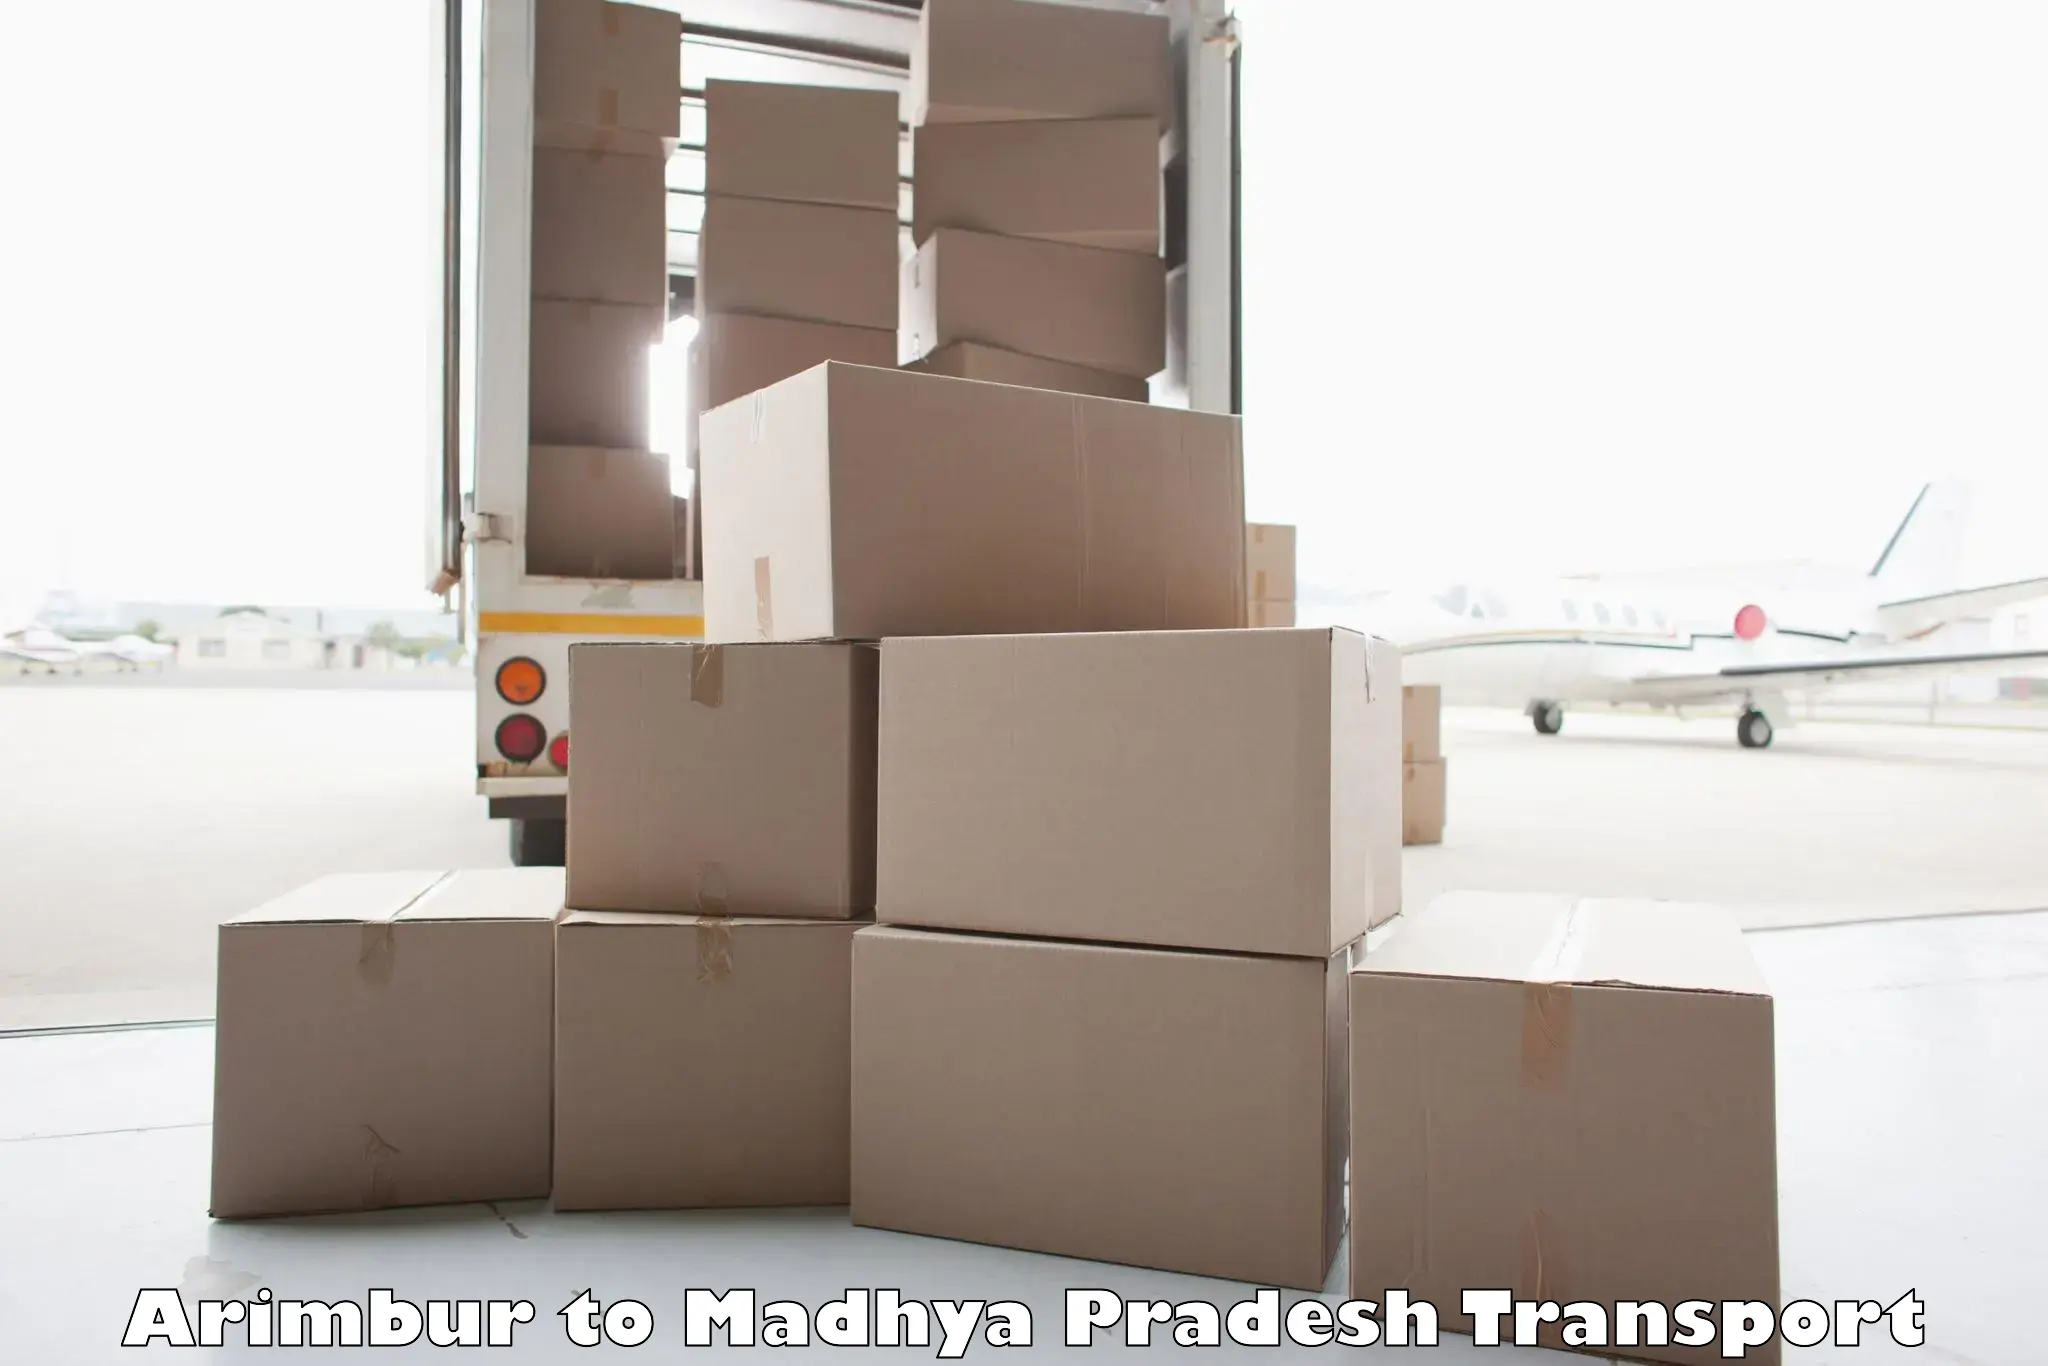 Container transport service Arimbur to Banda Sagar